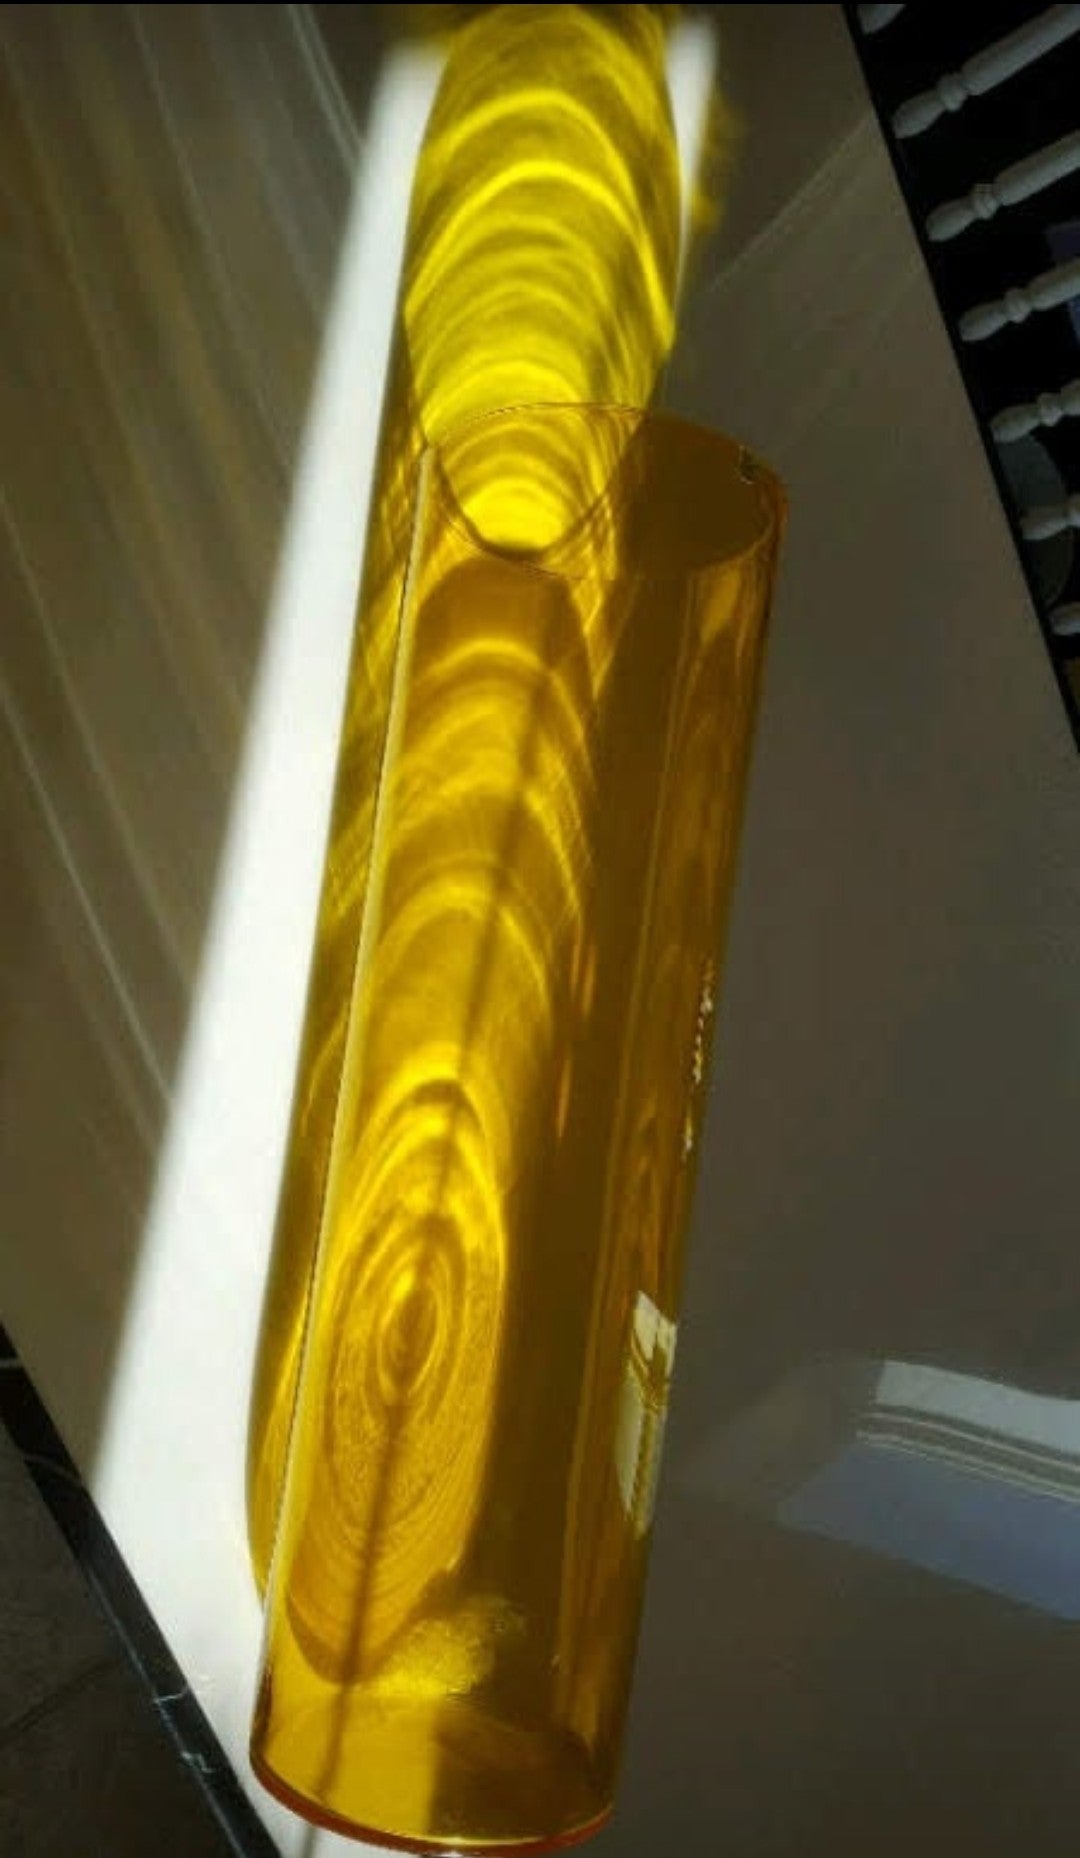 Stunning 1950s Gullaskruf Sweden XL Yellow Art Glass Floor Vase by Kjell Blomberg